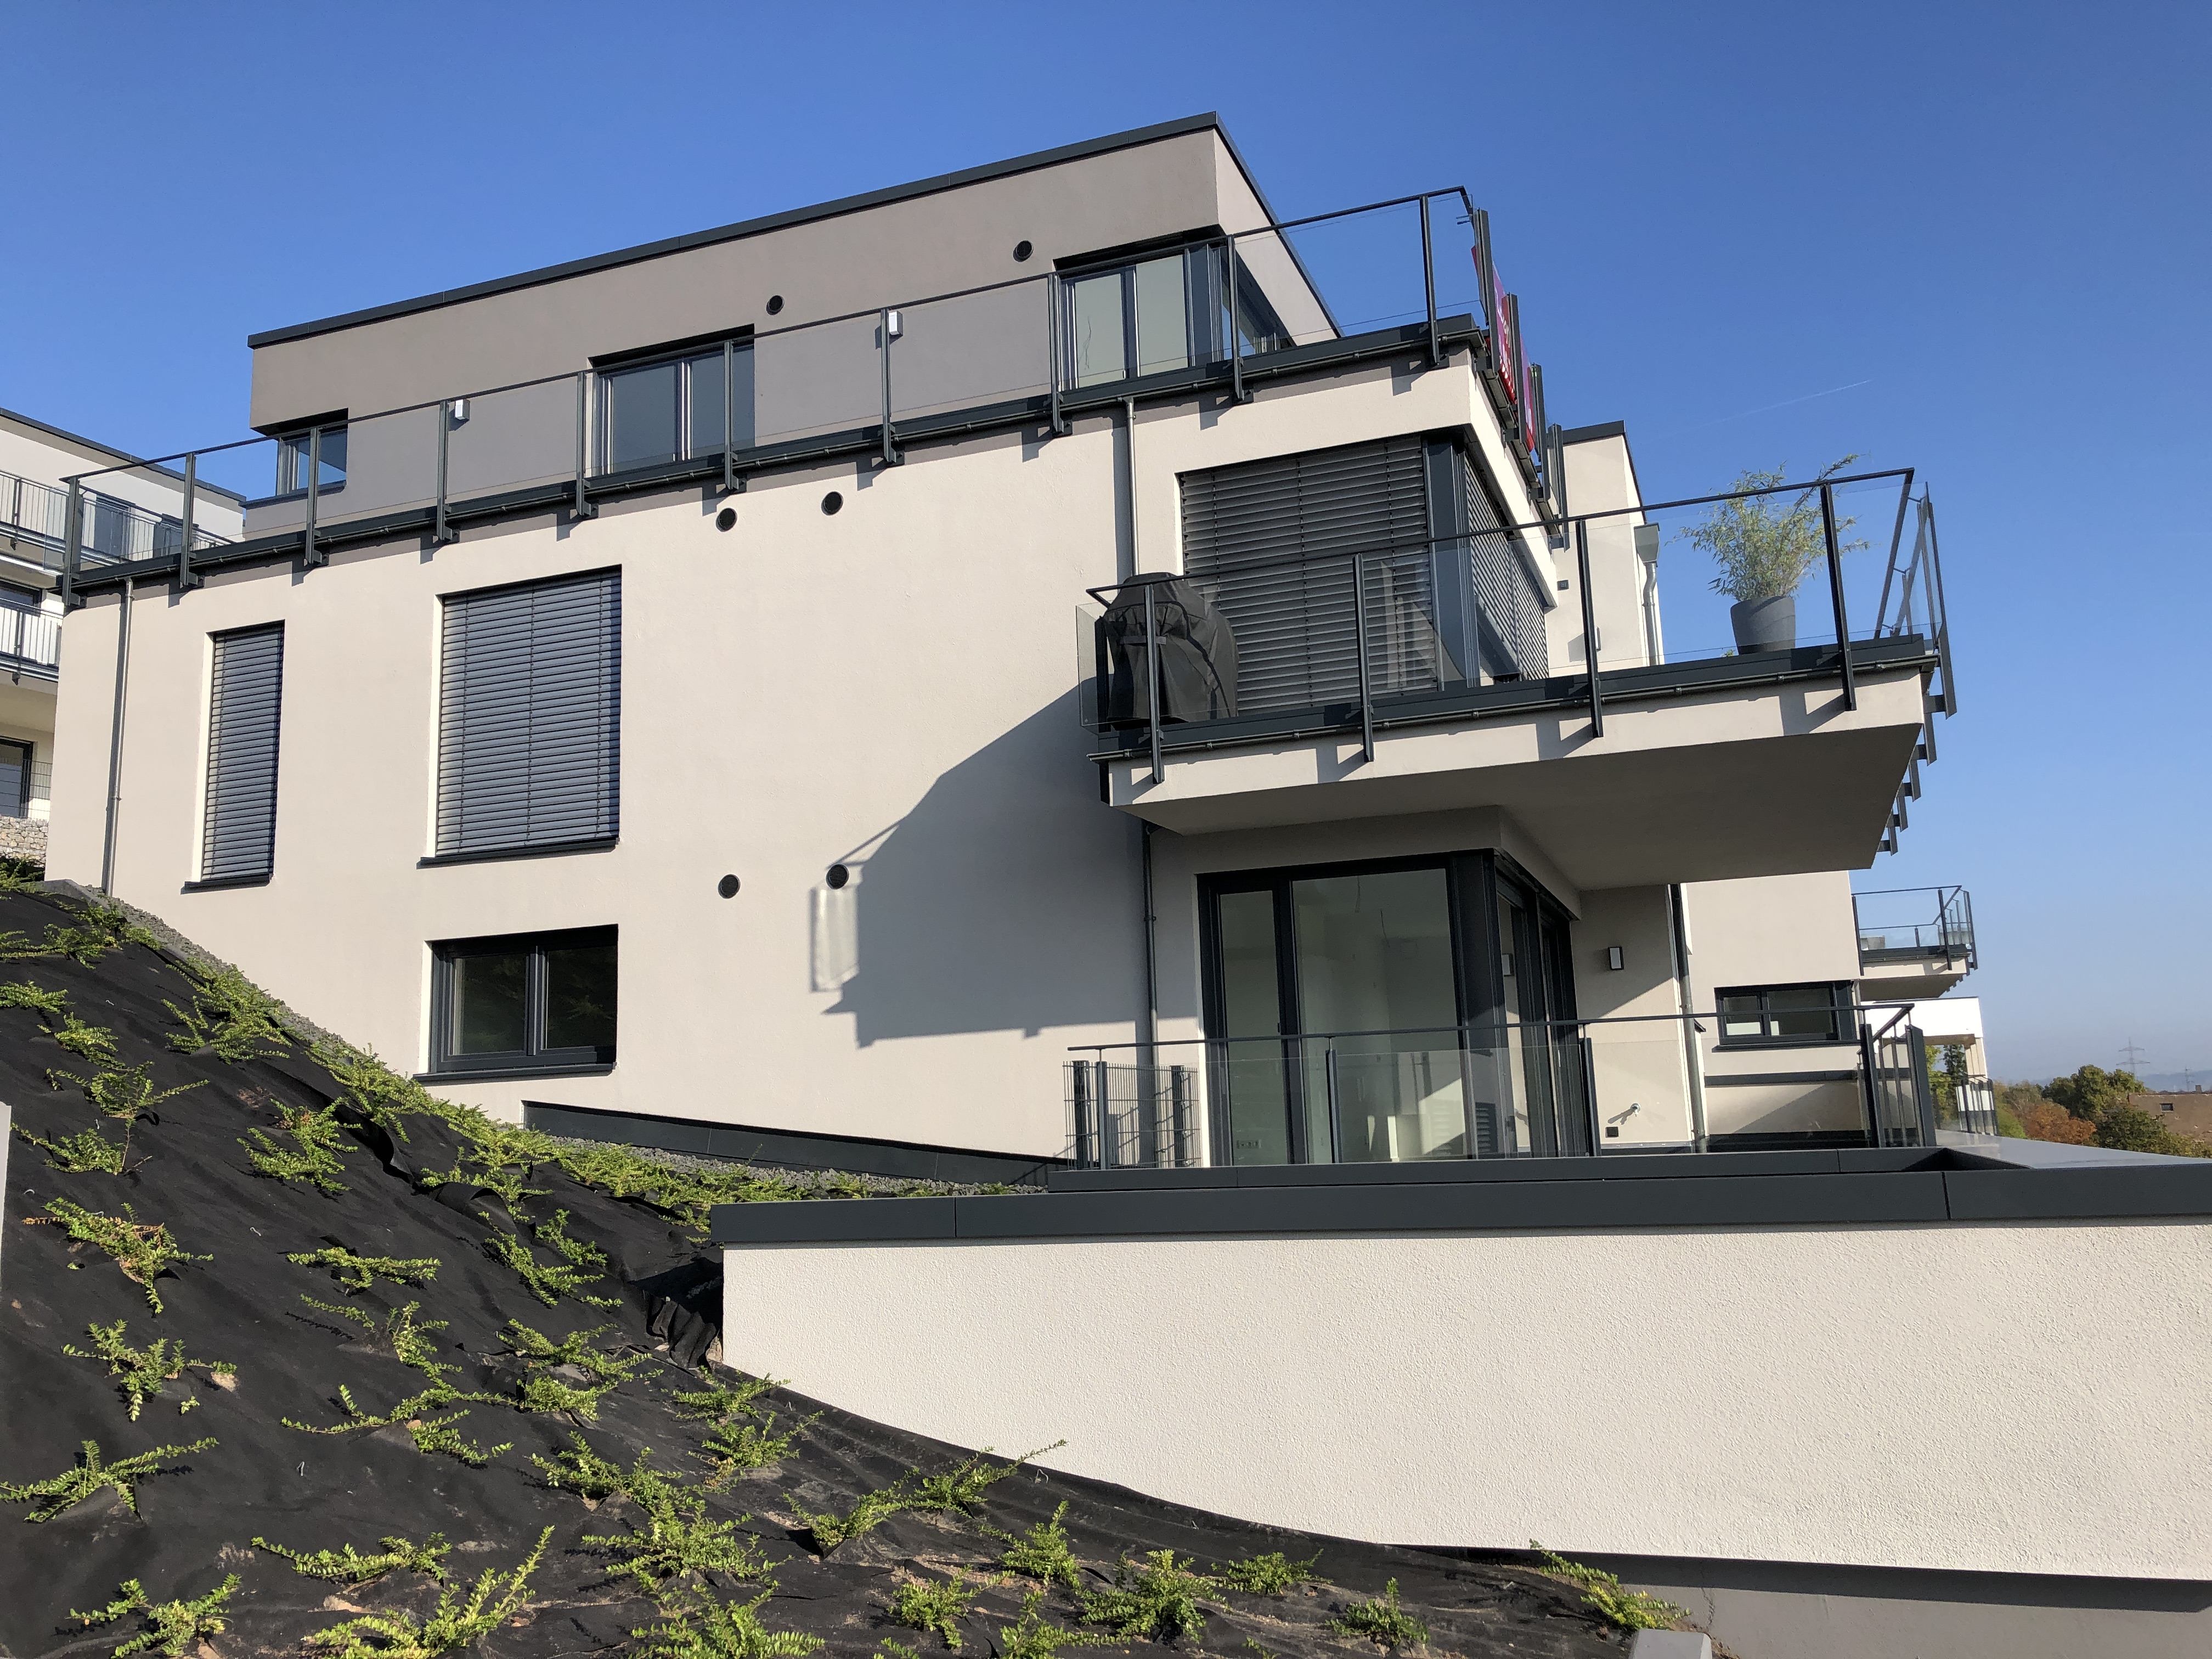 Neubau eines Merhfamilienhaus in Bad Kreuznach 2